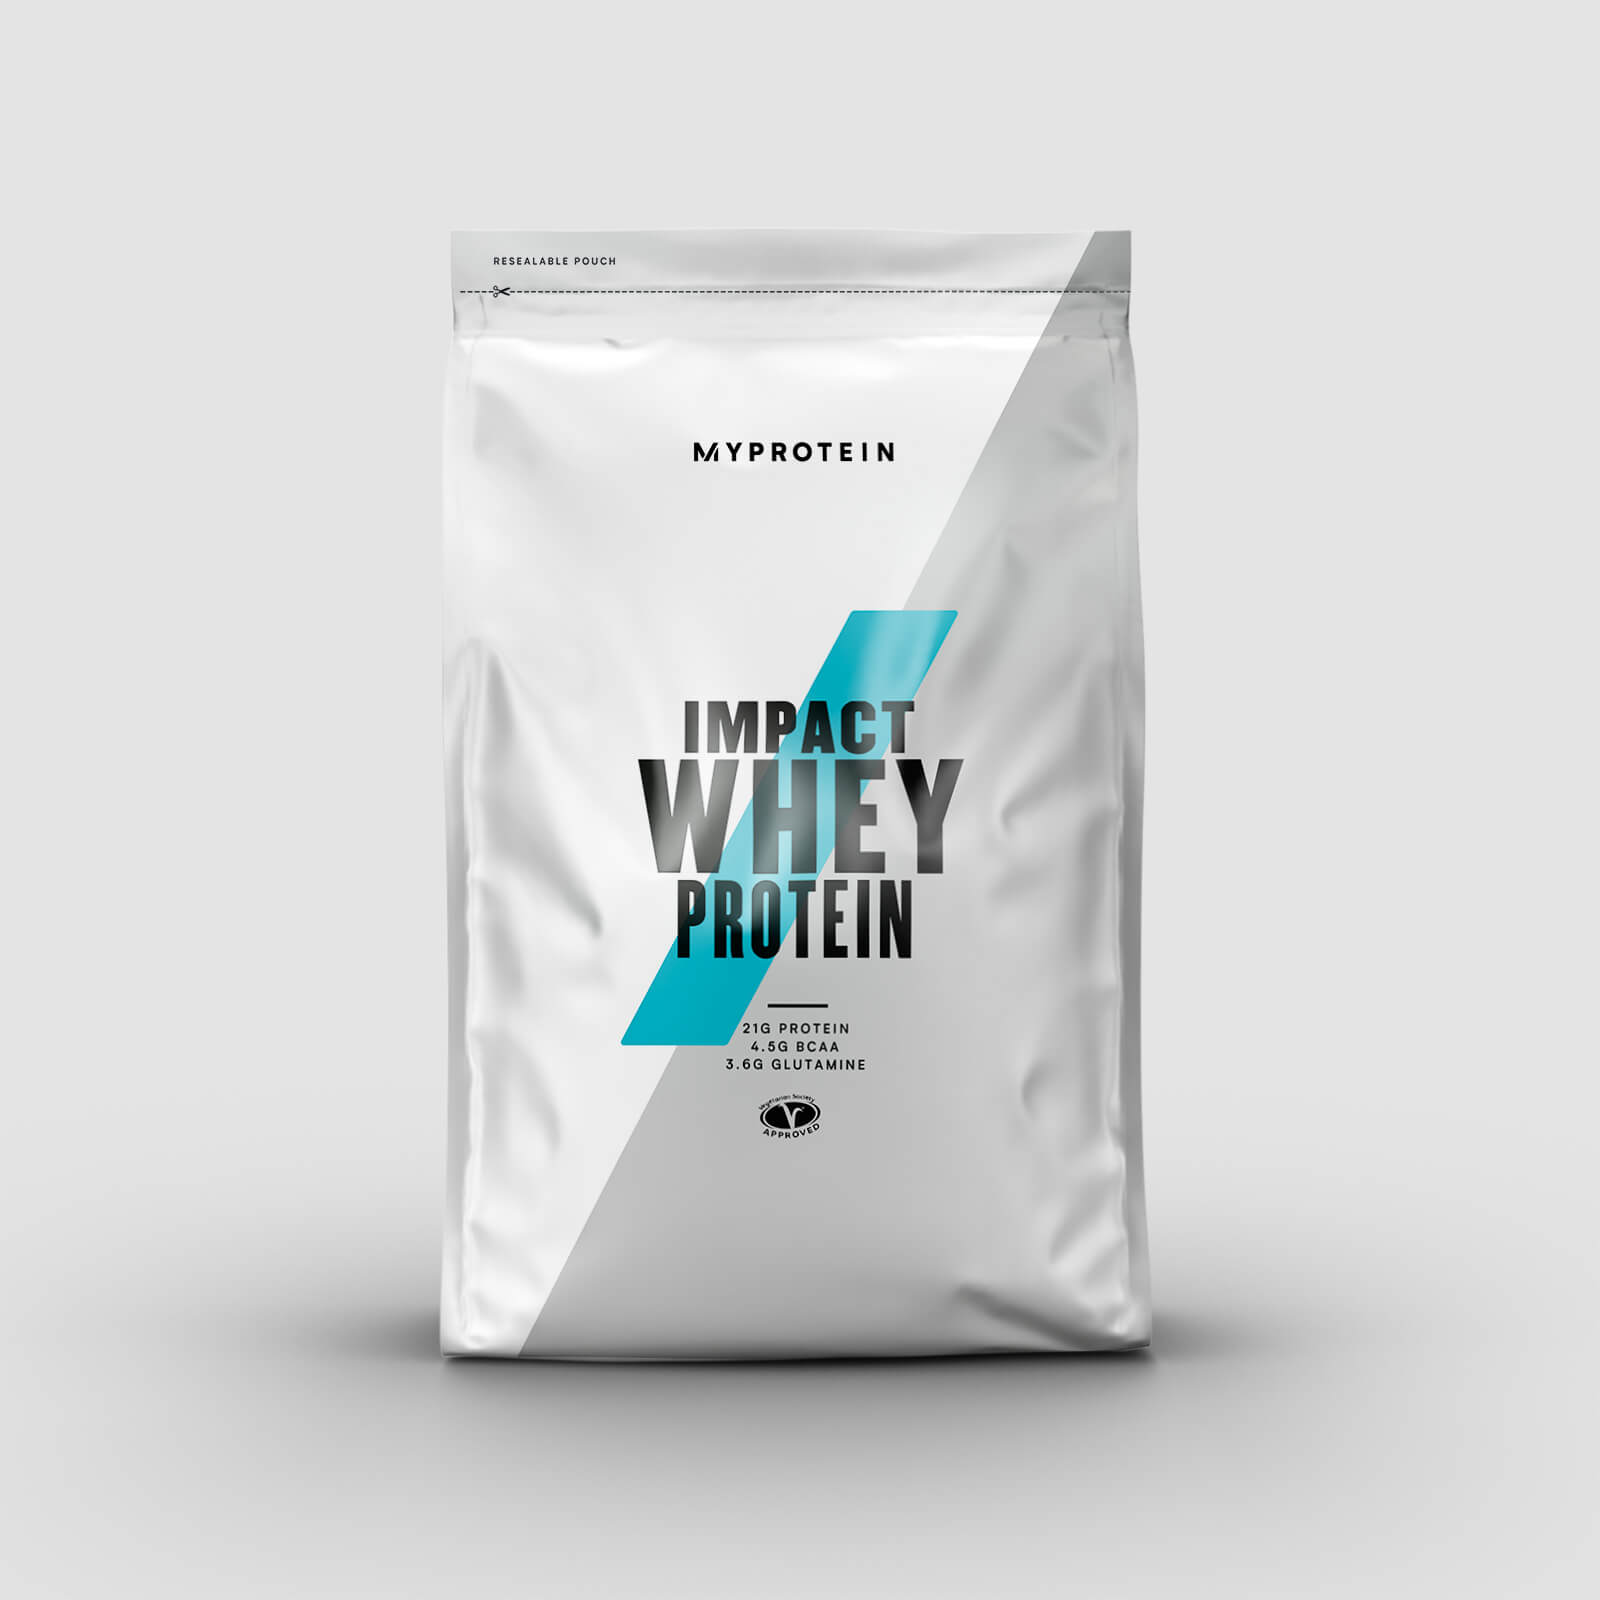 Myprotein Vassleprotein - Impact Whey Protein - 2.5kg - Coffee Caramel